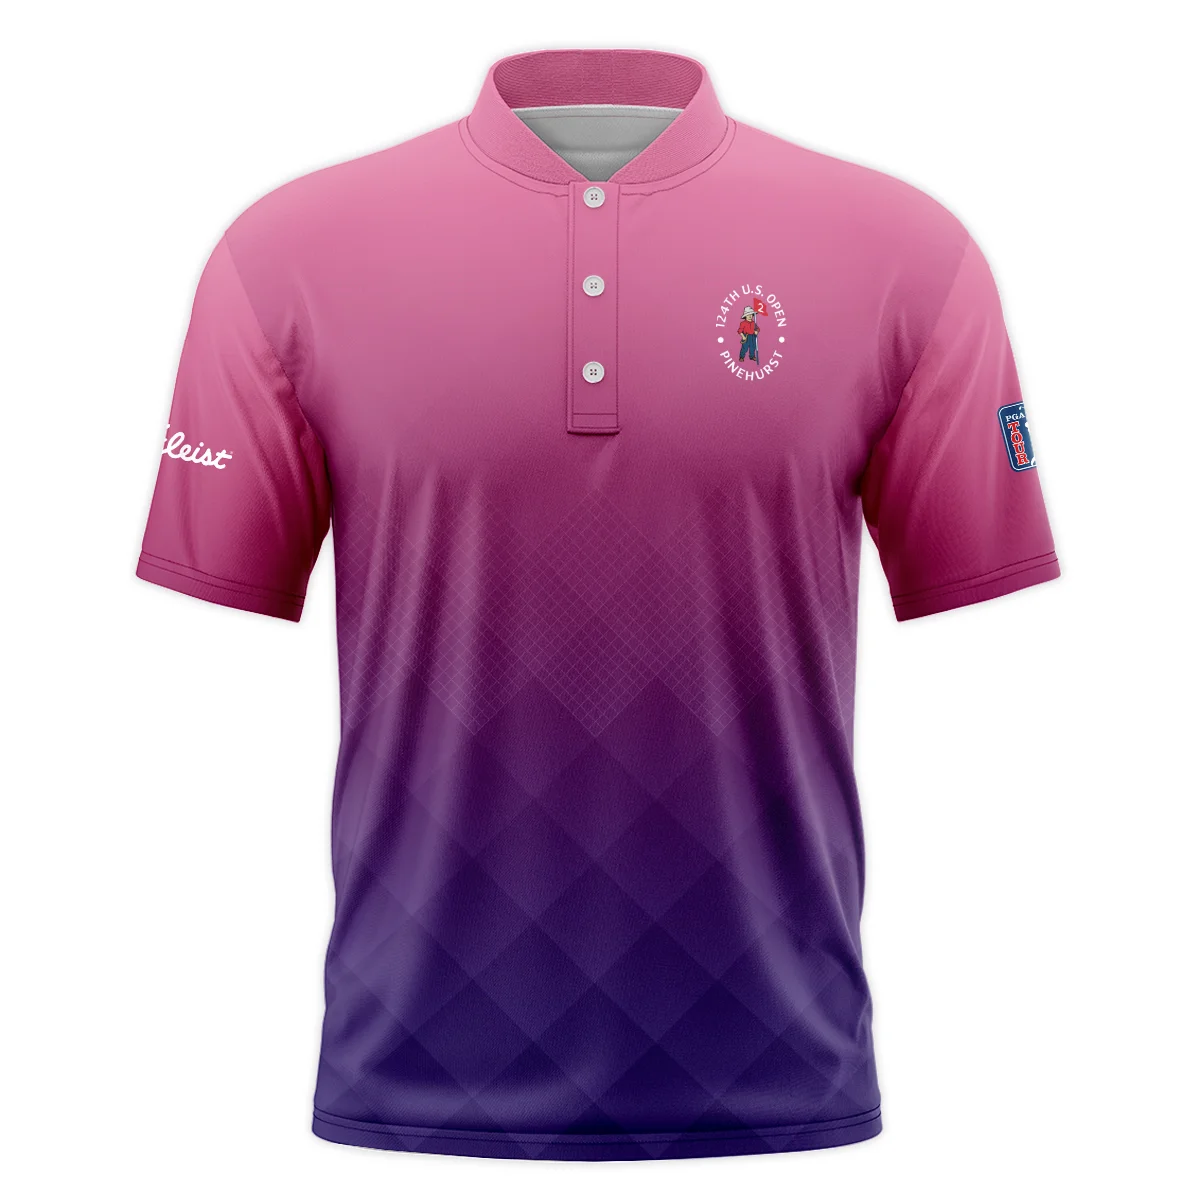 Titleist 124th U.S. Open Pinehurst Purple Pink Gradient Abstract Sleeveless Jacket Style Classic